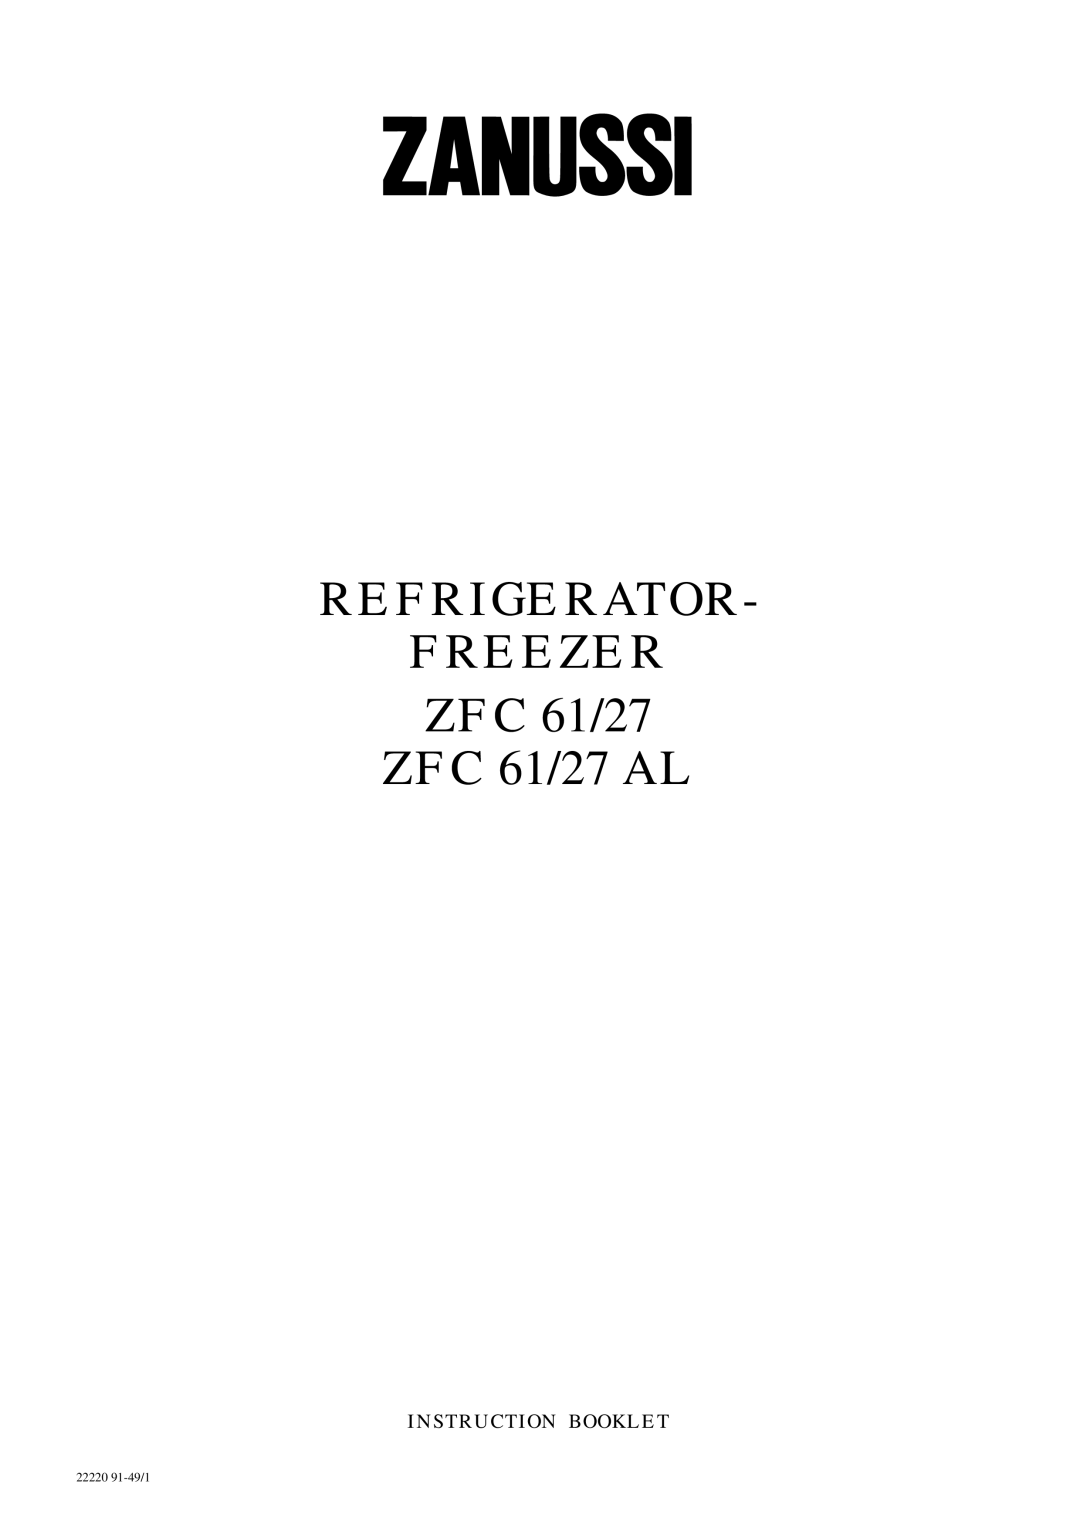 Zanussi manual REFRIGERATOR FREEZER ZFC 61/27 ZFC 61/27 AL, Instruction Booklet, 22220 91-49/1 